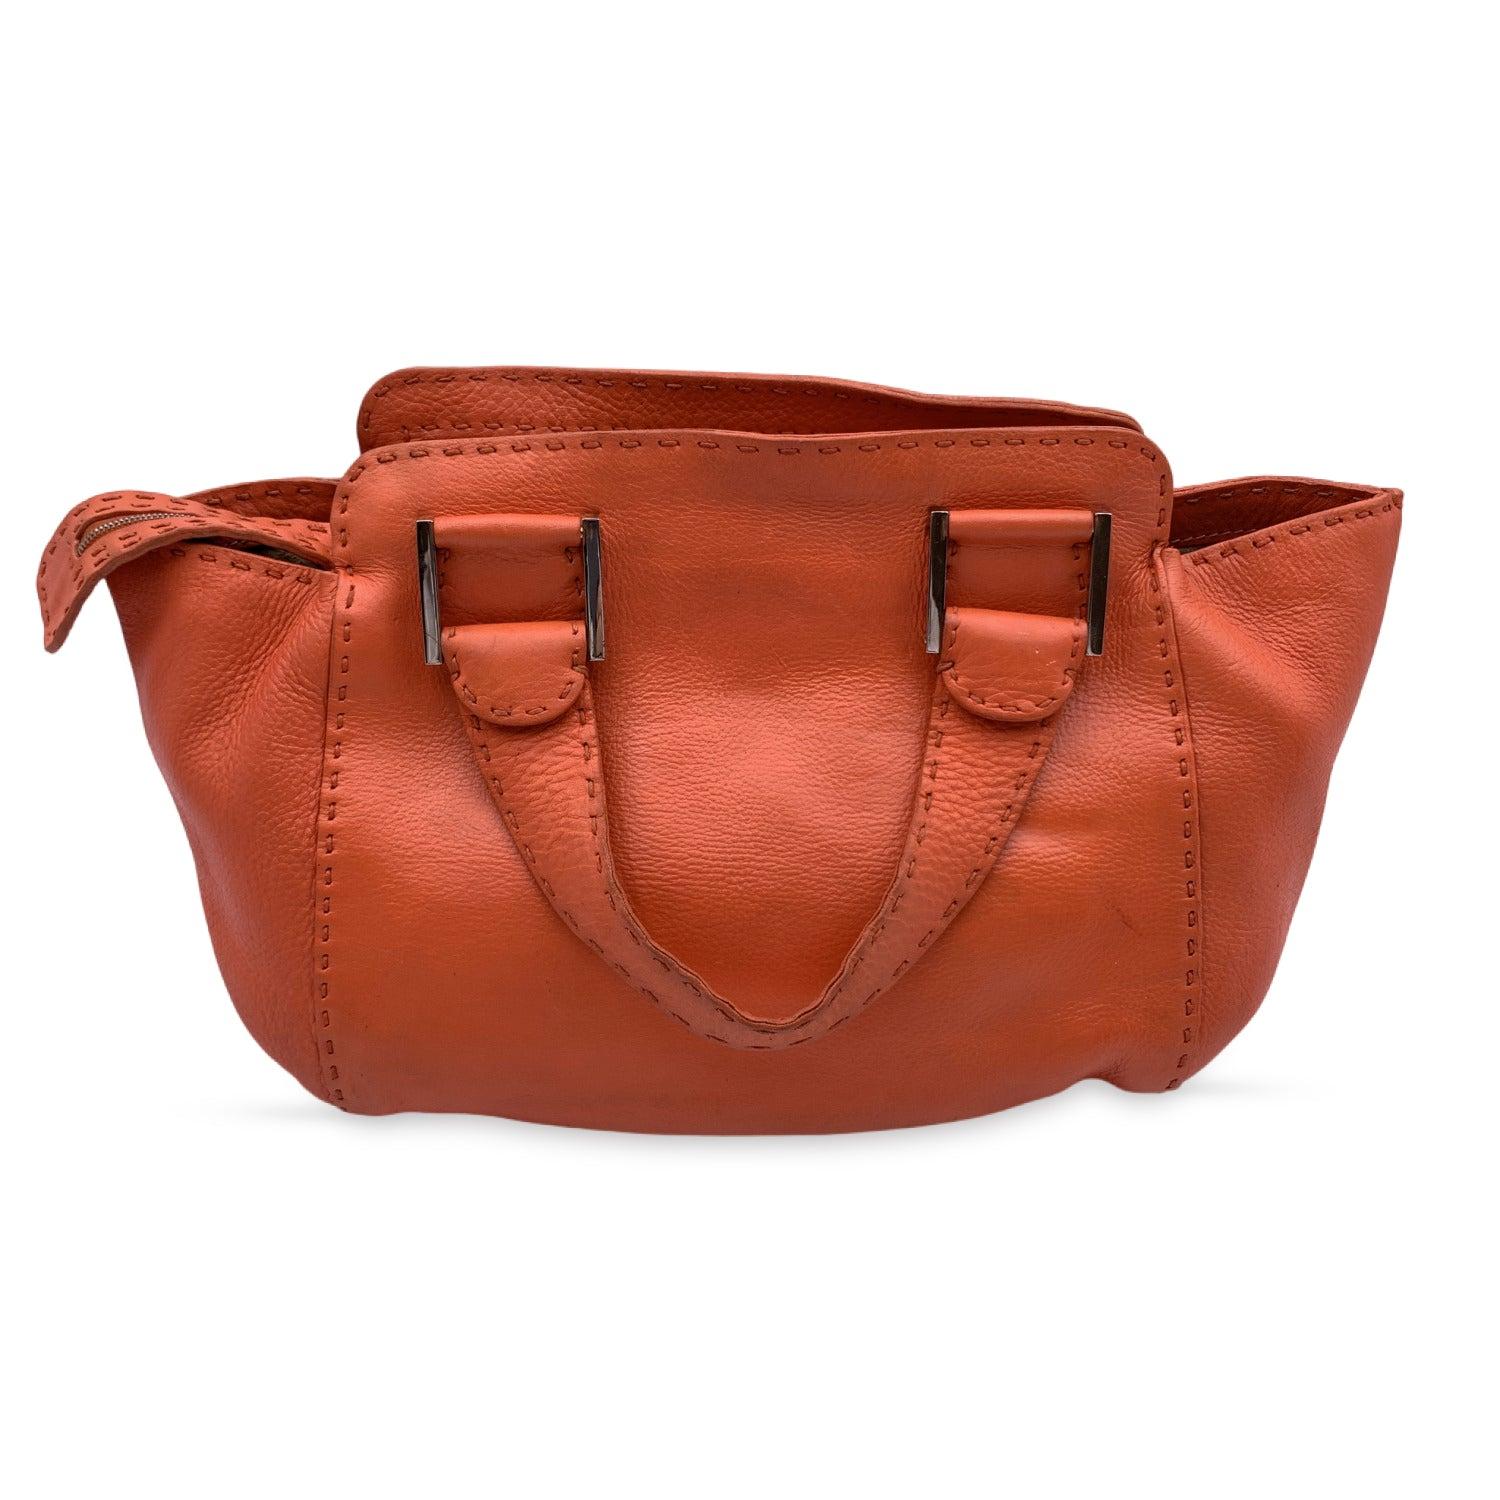 Fendi Selleria Orange Leather Small Tote Handbag Satchel In Good Condition In Rome, Rome